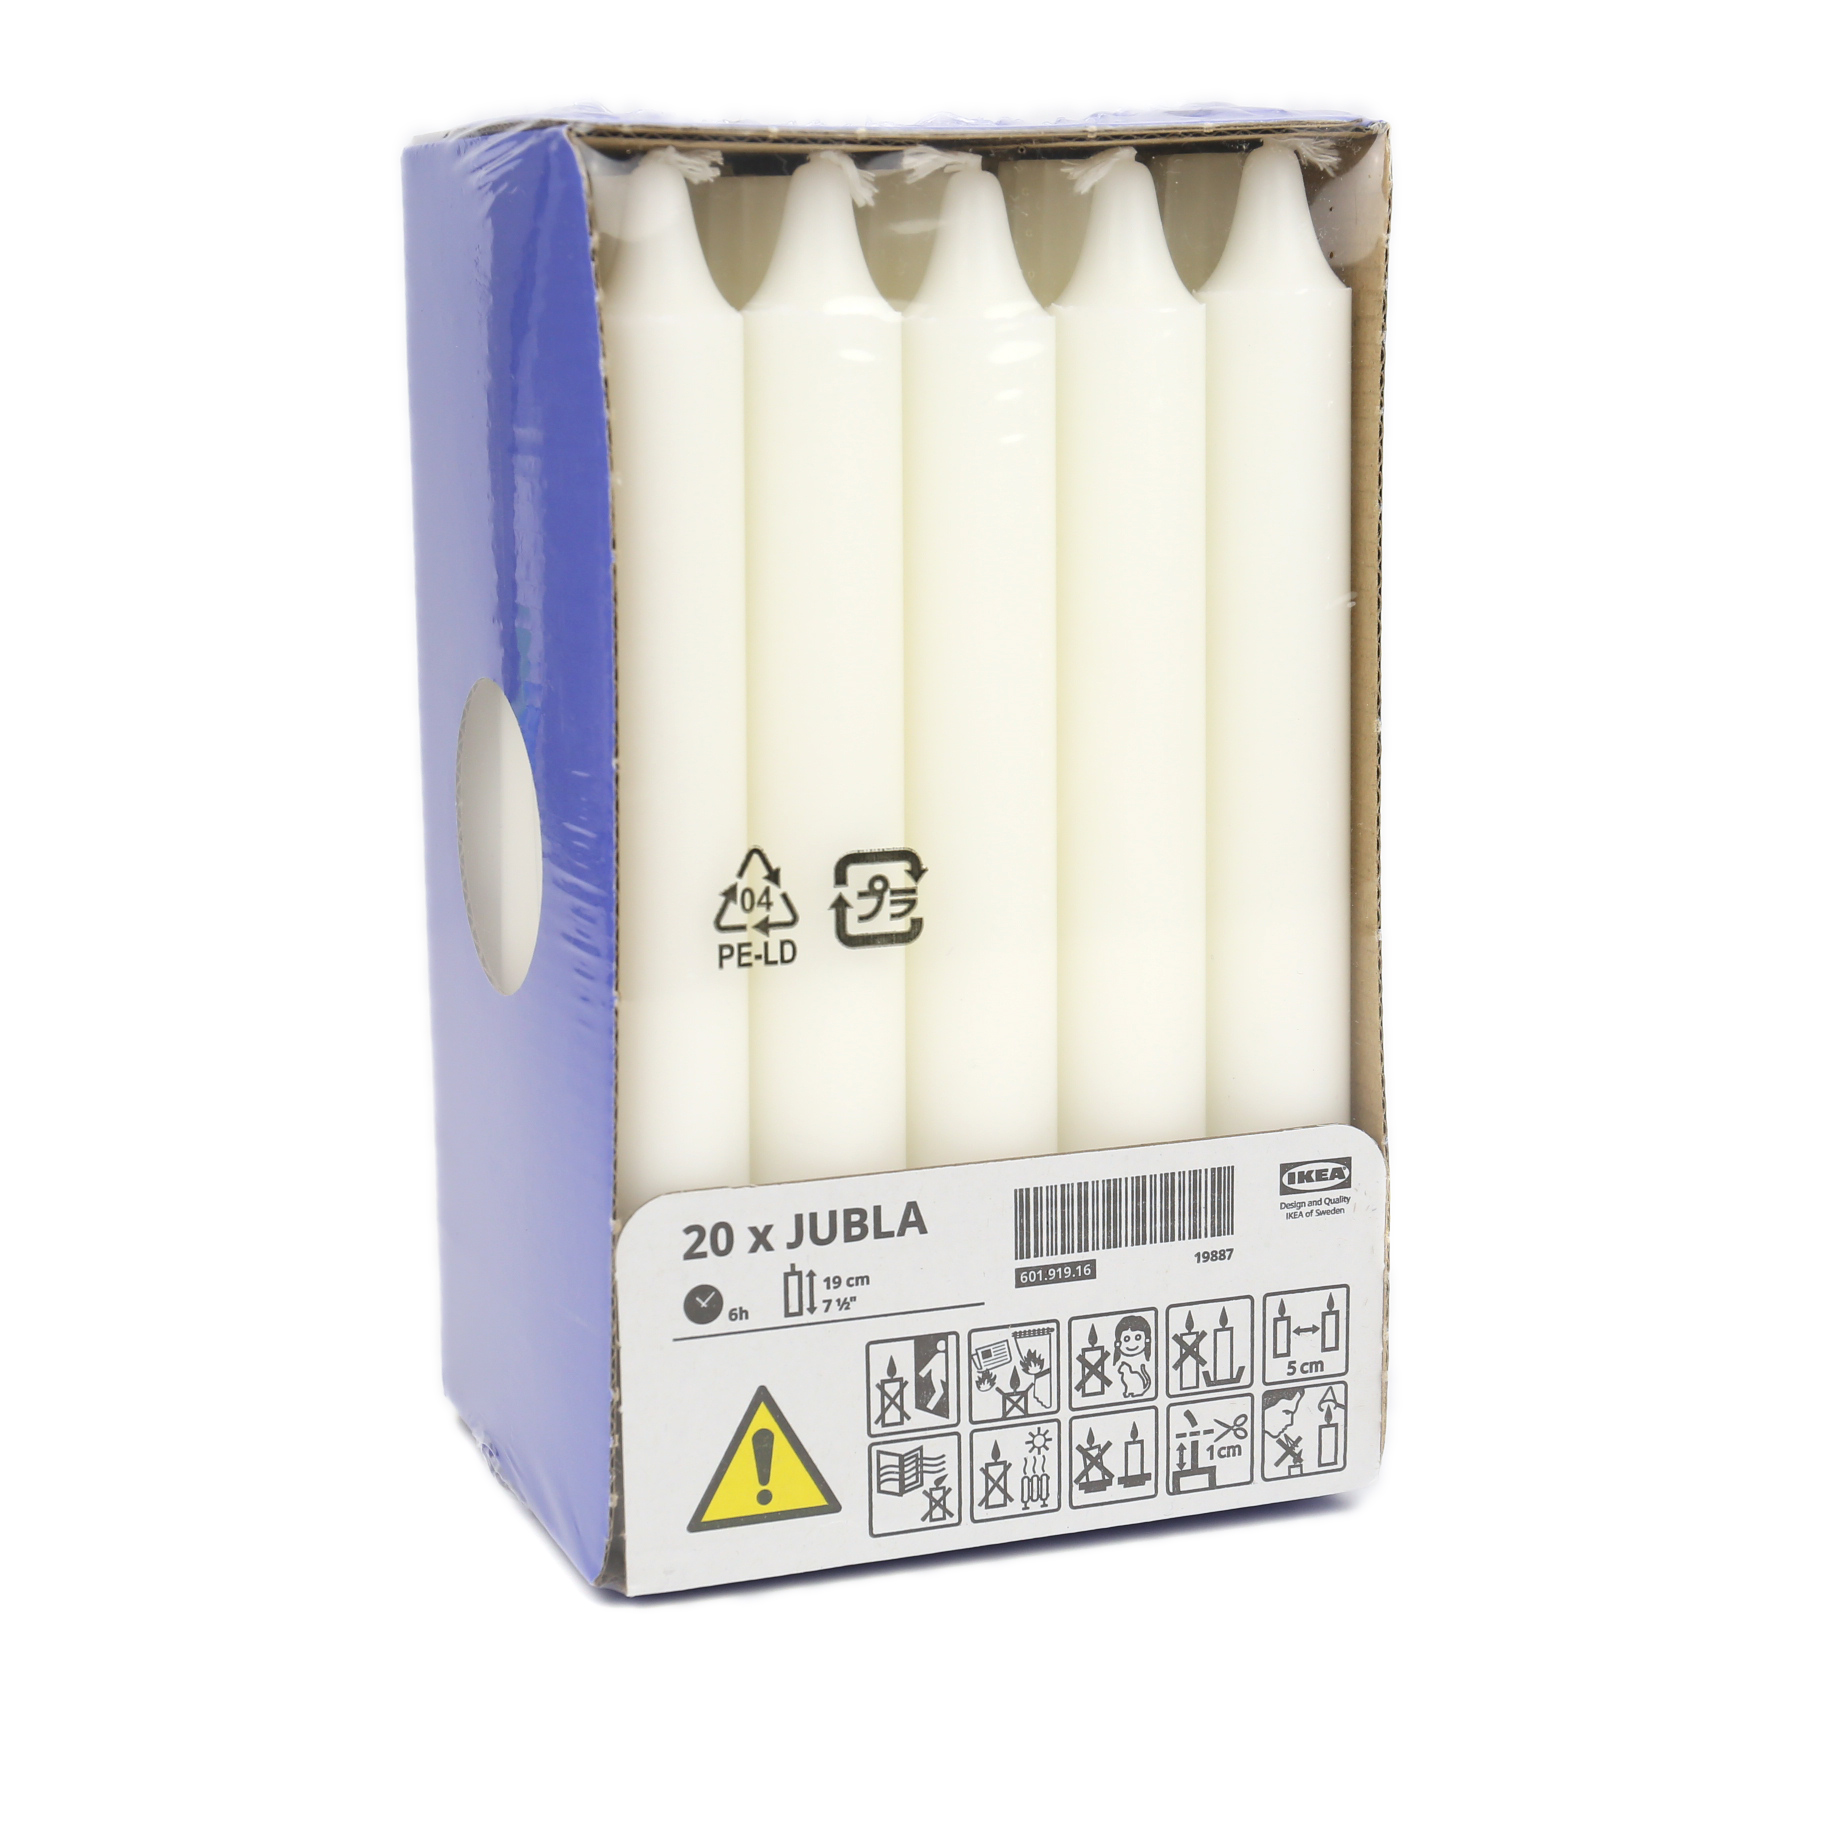 20 Kerzen - Stabkerzen - Stearin - 19cm - IKEA - Weiß